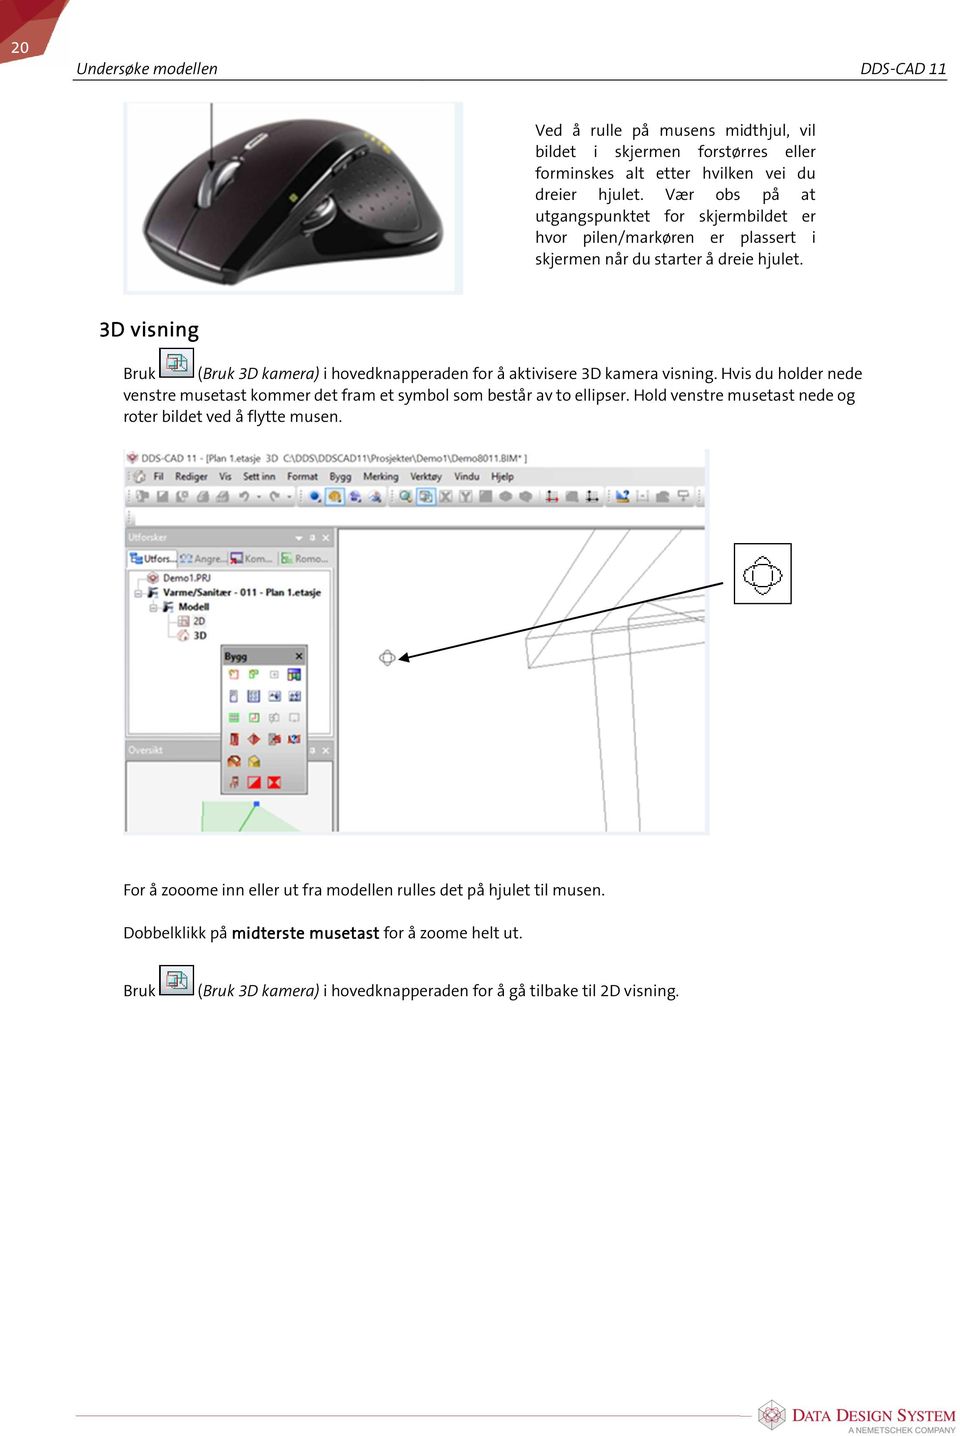 3D visning Bruk (Bruk 3D kamera) i hovedknapperaden for å aktivisere 3D kamera visning. Hvis du holder nede venstre musetast kommer det fram et symbol som består av to ellipser.